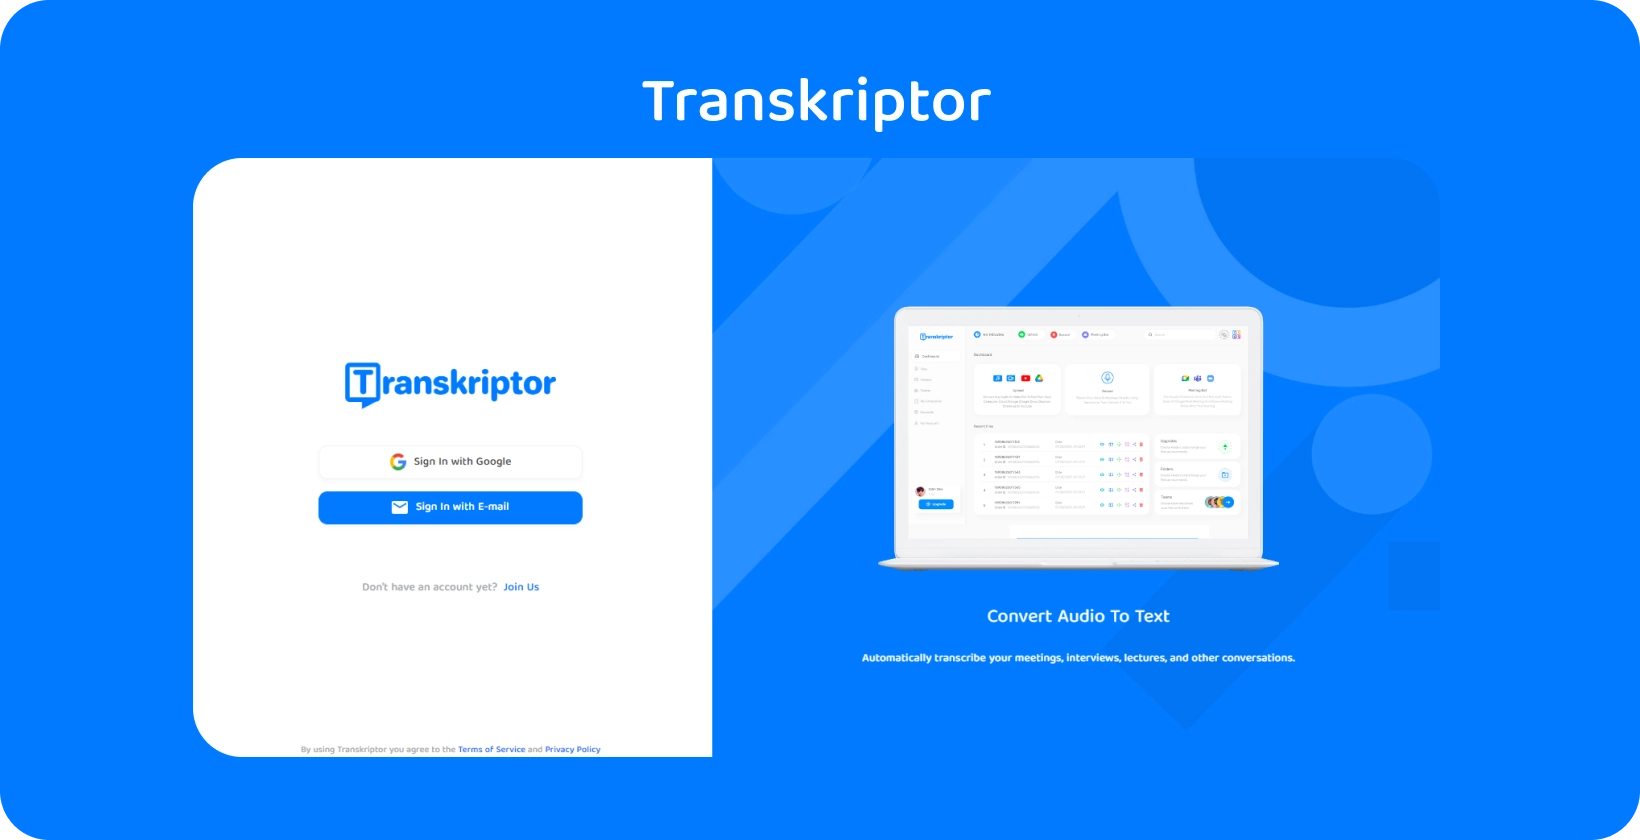 Antarmuka aplikasi Transkriptor menampilkan layanan transkripsi audio ke teks yang mudah untuk wawasan rekam medis.